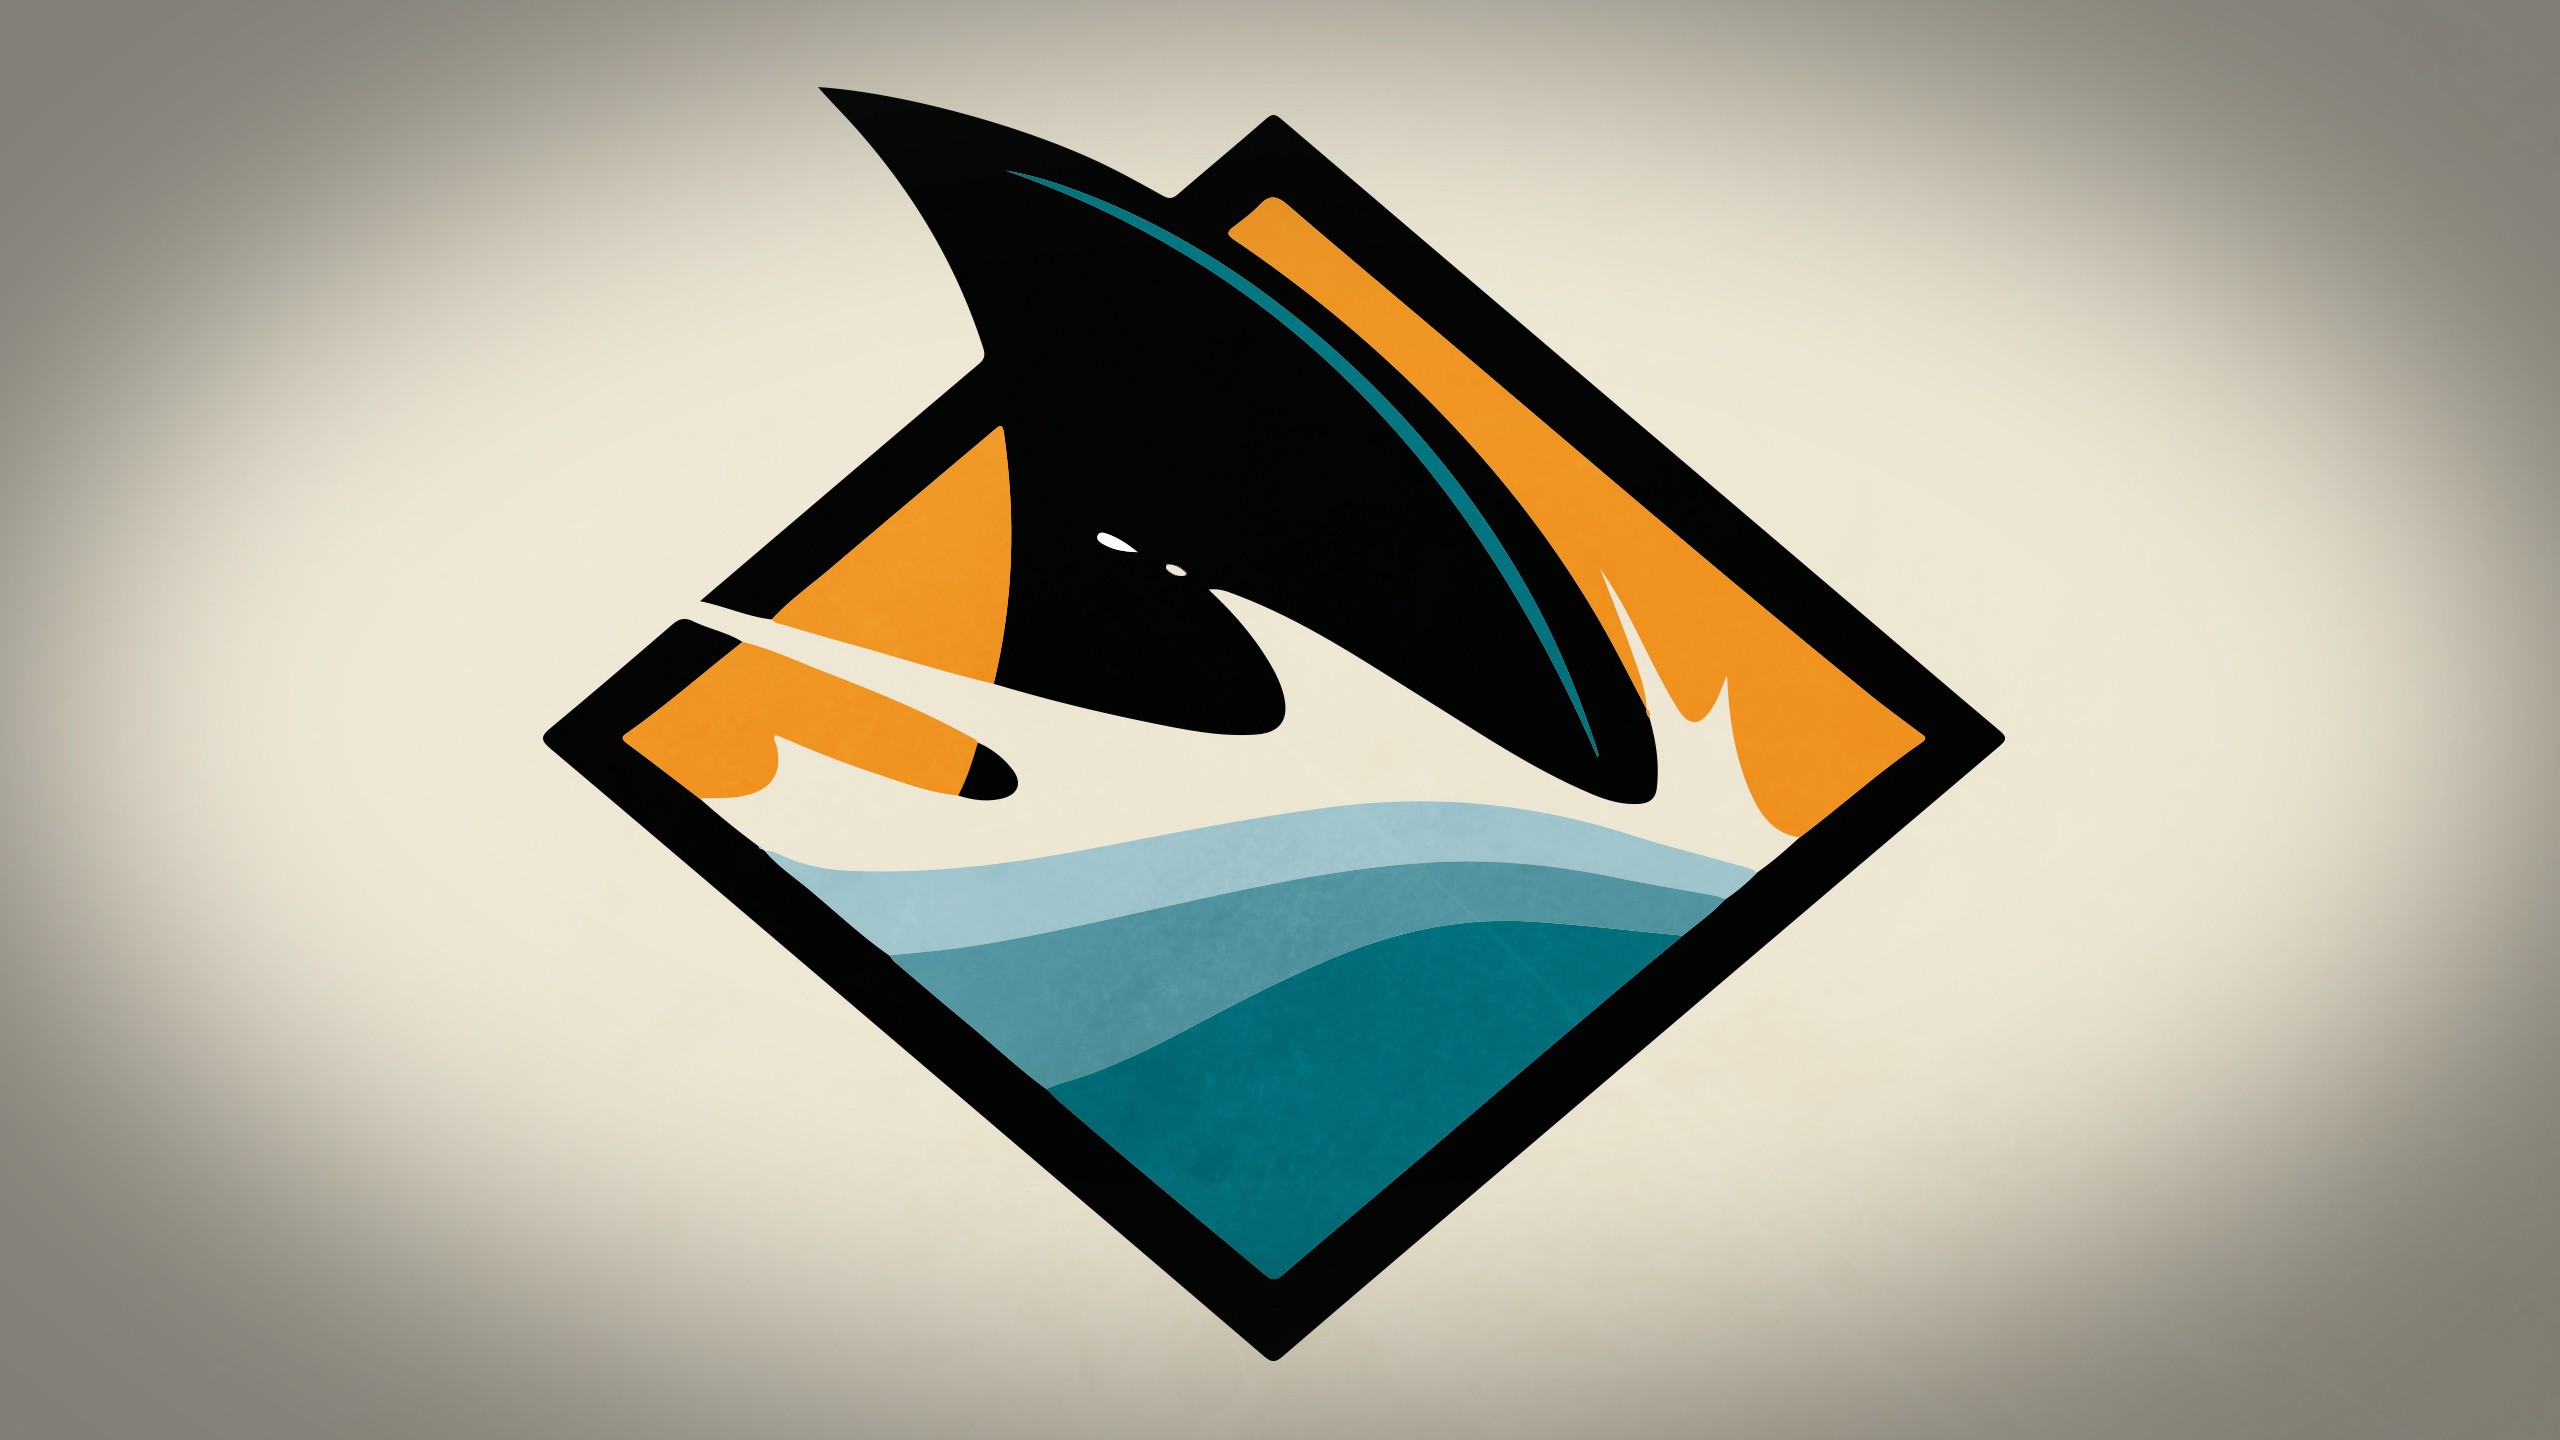 San Jose Sharks 1080P, 2K, 4K, 5K HD wallpapers free download